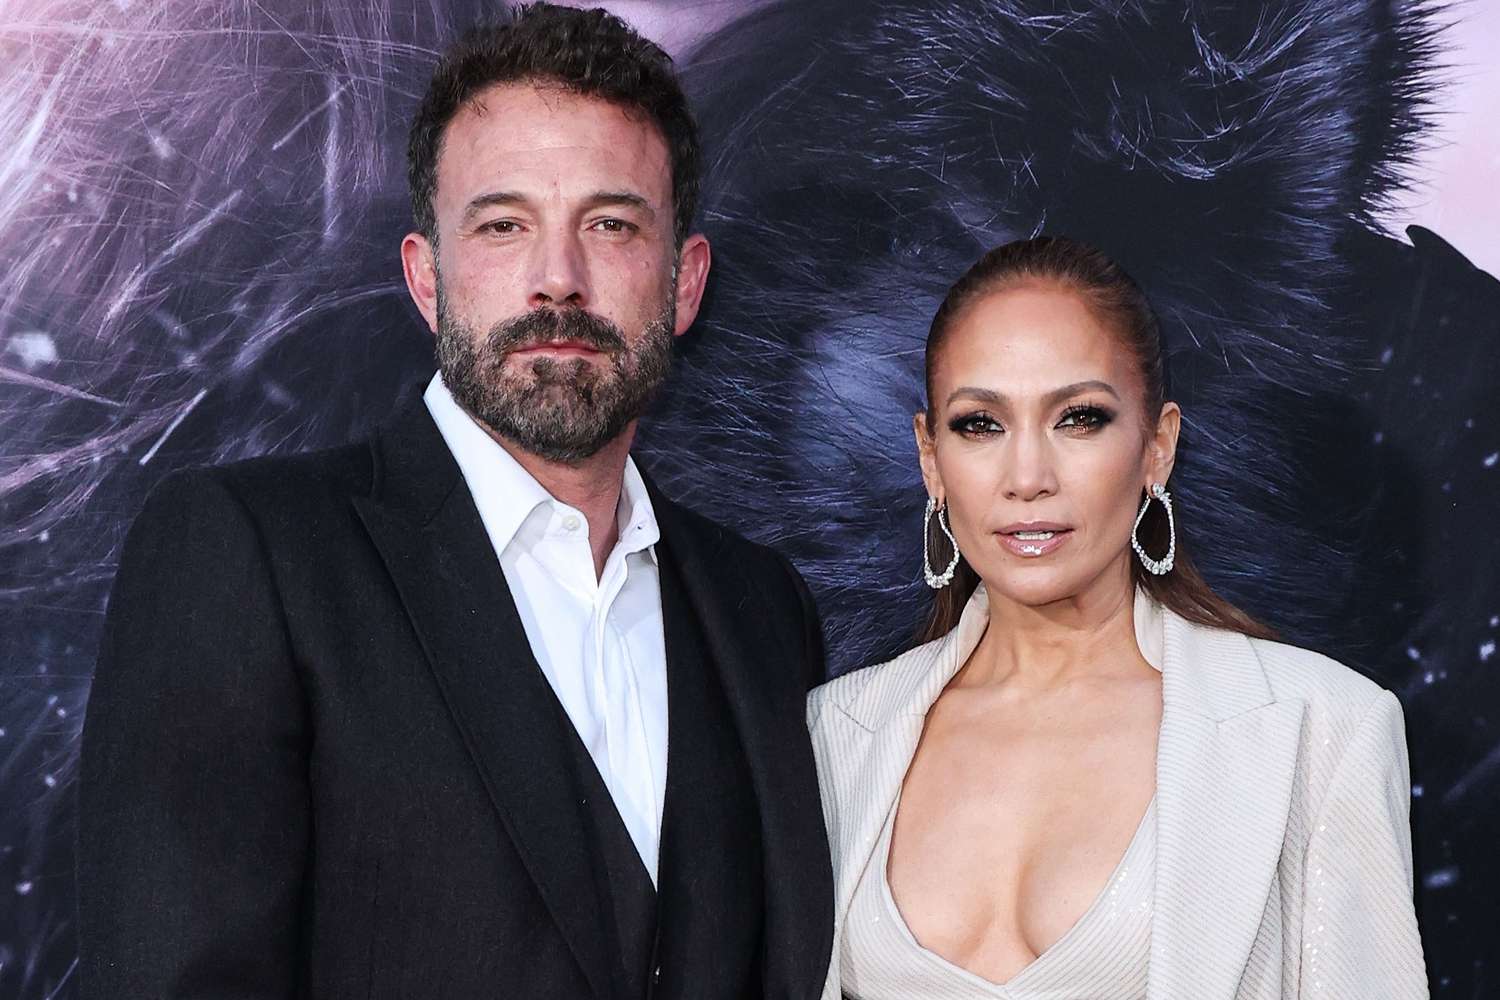 Bomba iddia: Jennifer Lopez ve Ben Affleck mart ayında boşandı